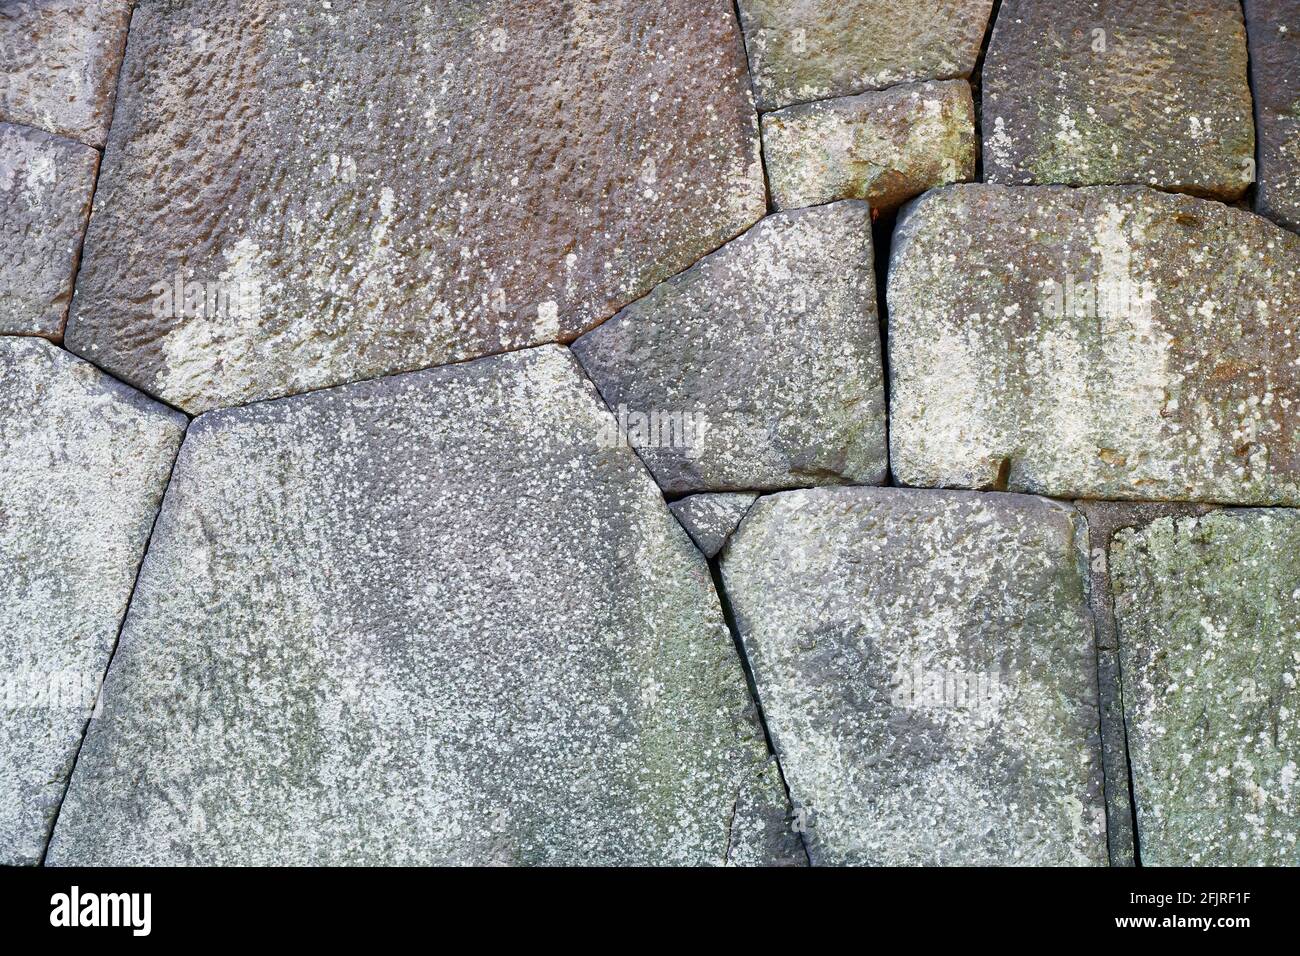 Hintergrund des alten Edo-Schlosses polygonales Mauerwerk in Kletter-Spundtechnik verwendet, um schräge Steinmauern zu bauen gemacht. Kaiserpalast Tokio. Tokio. Japan Stockfoto